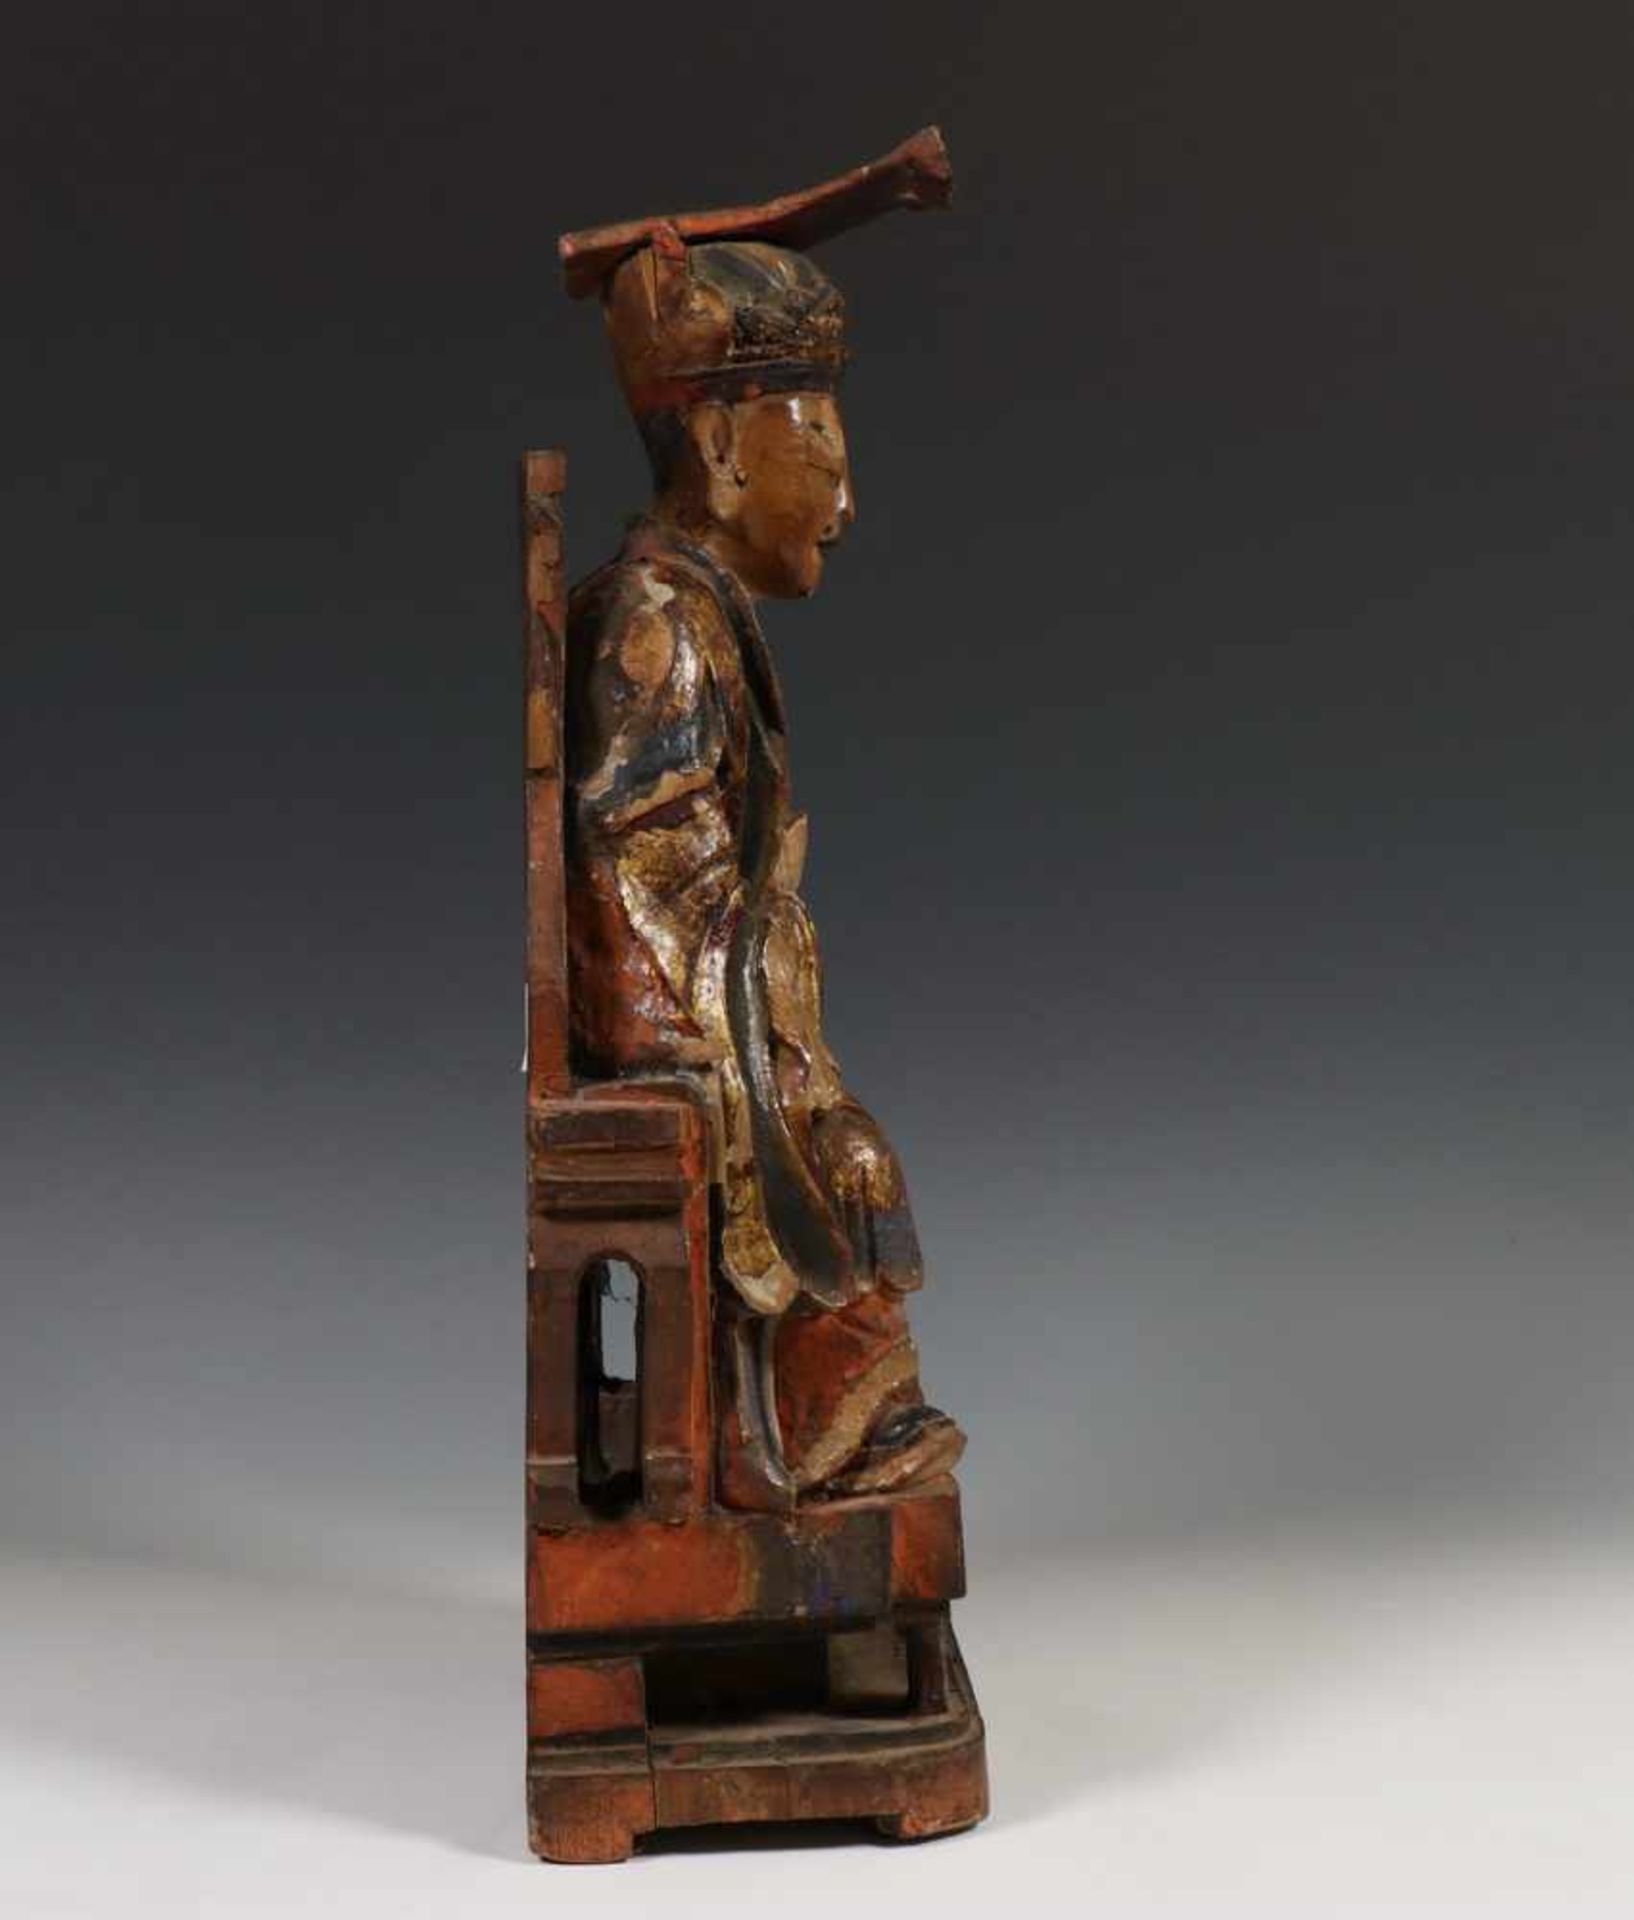 China, gestoken en polychroom houten sculptuur, 18e/19e eeuw;Hoogwaardigheidsbekleder op zetel met - Bild 4 aus 6